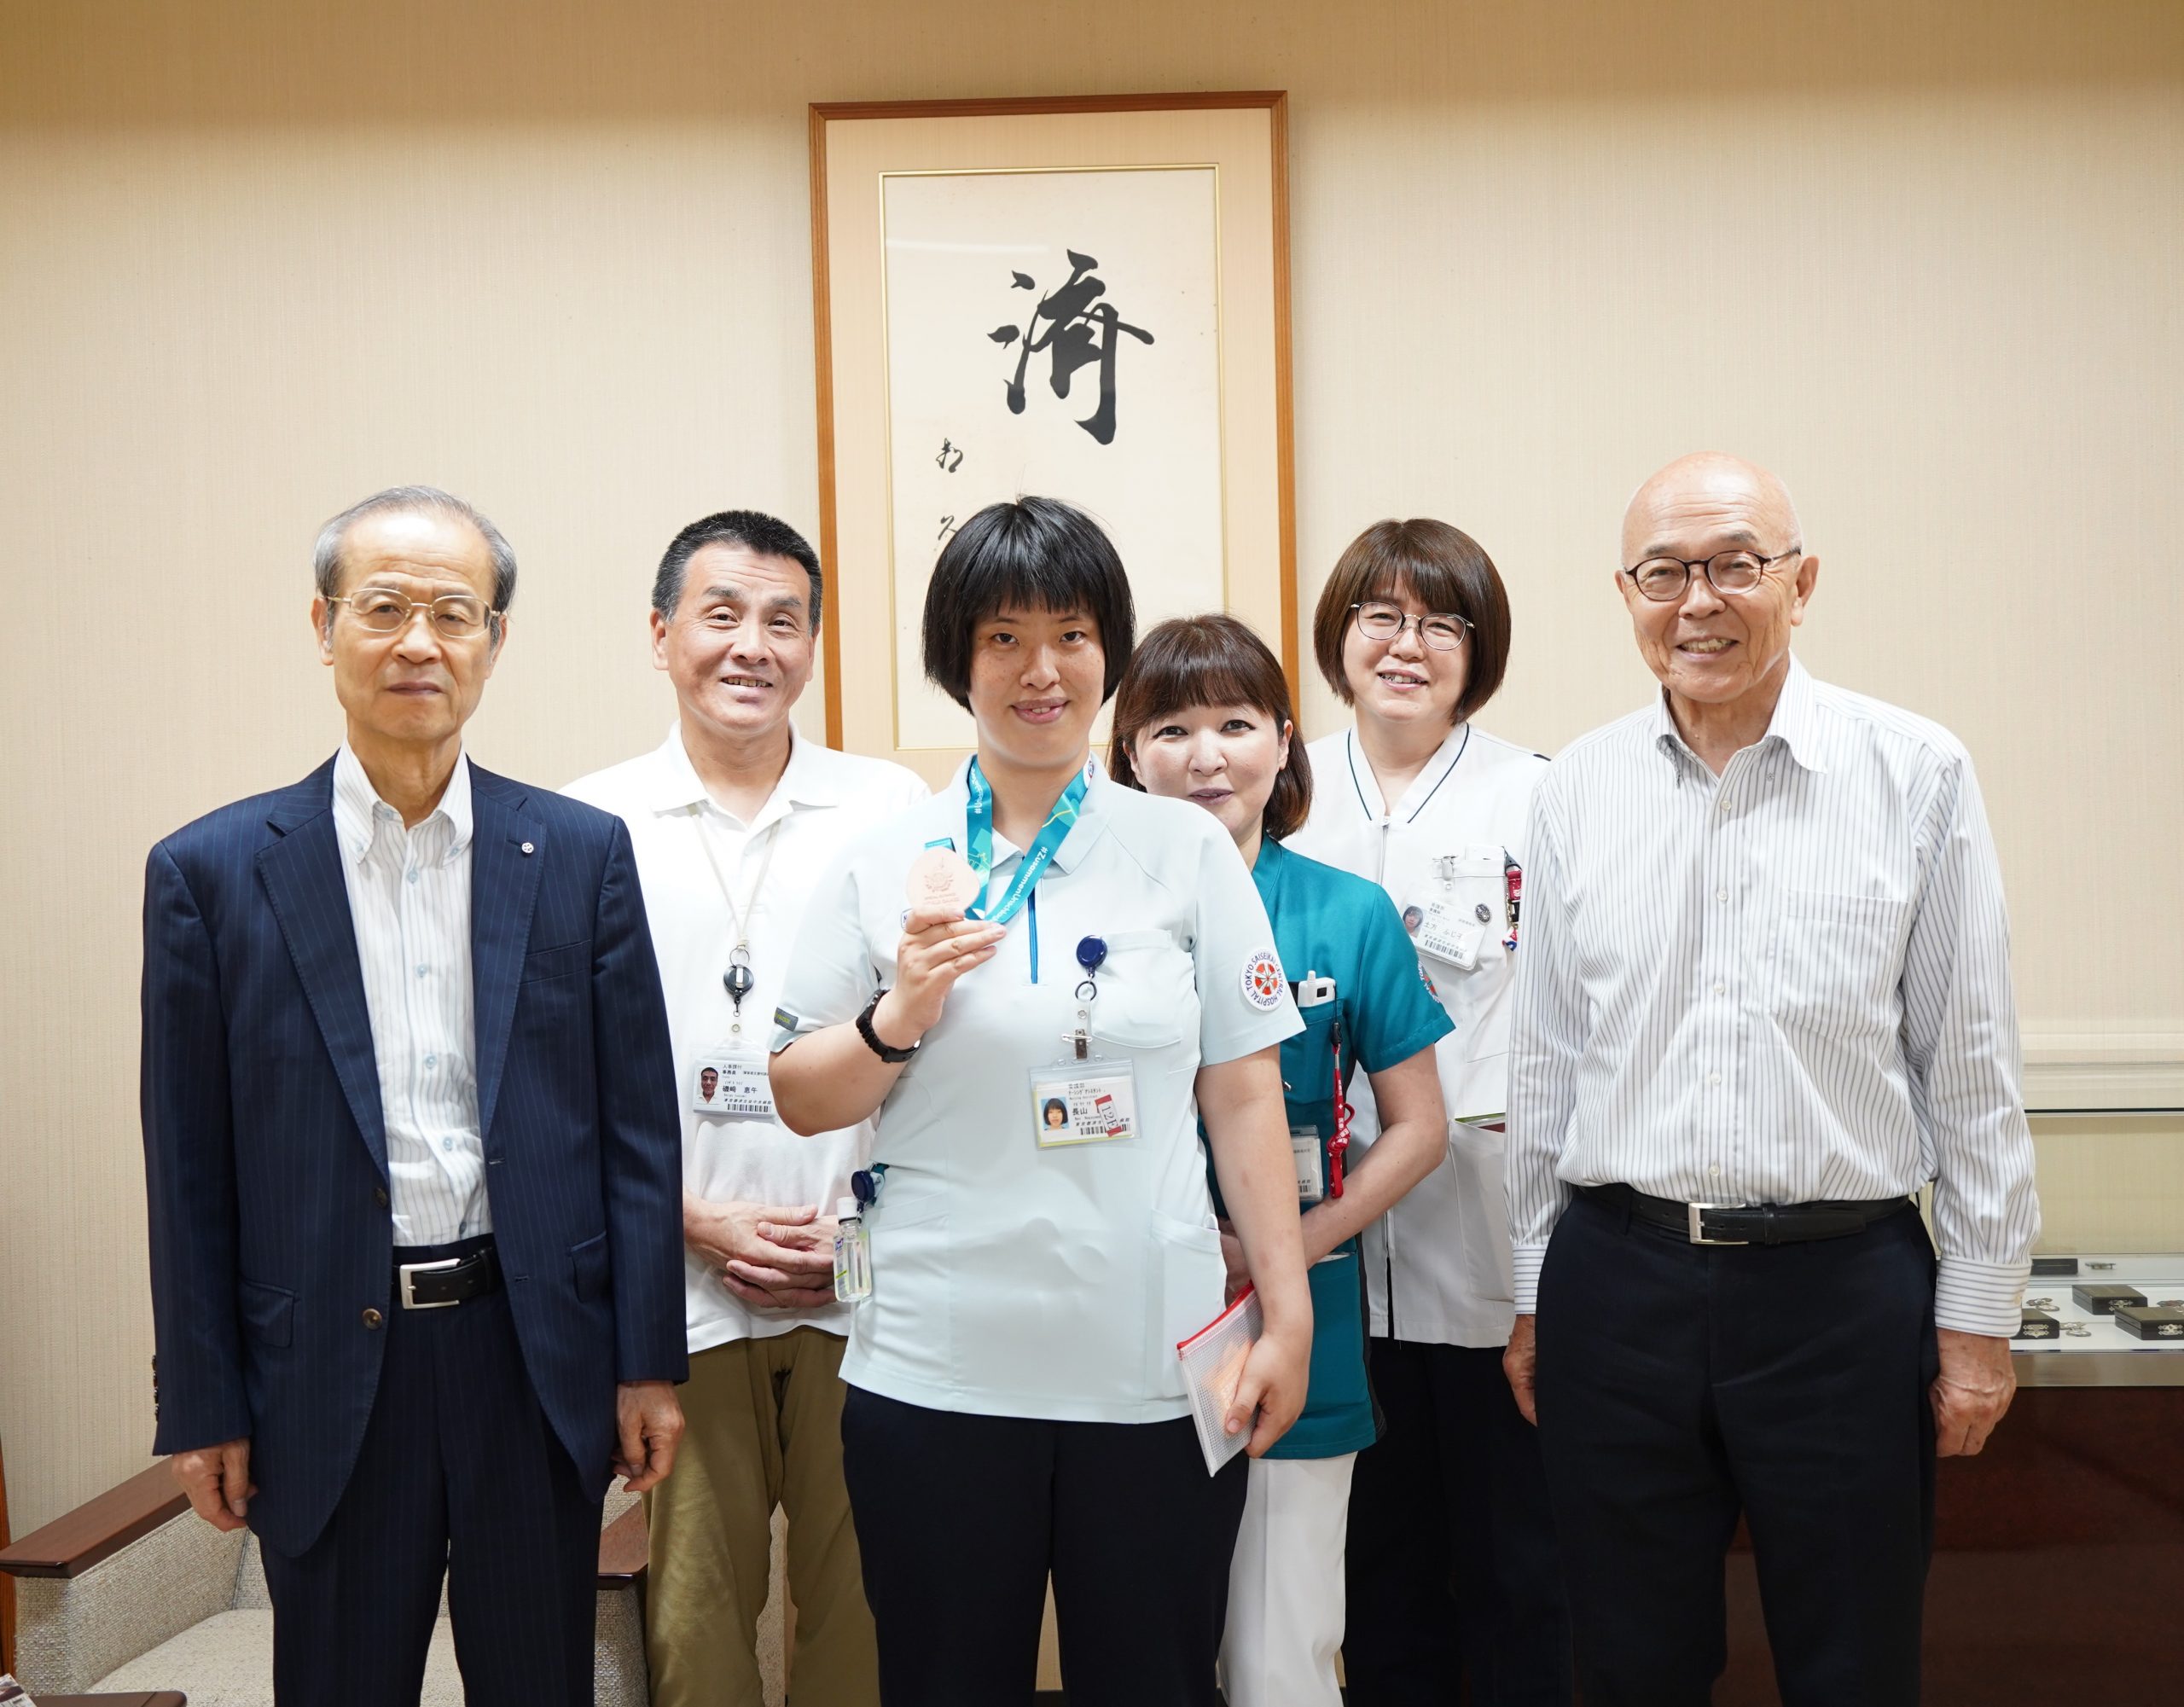 〈東京〉中央病院の長山直さん、スペシャルオリンピックスで銅メダル